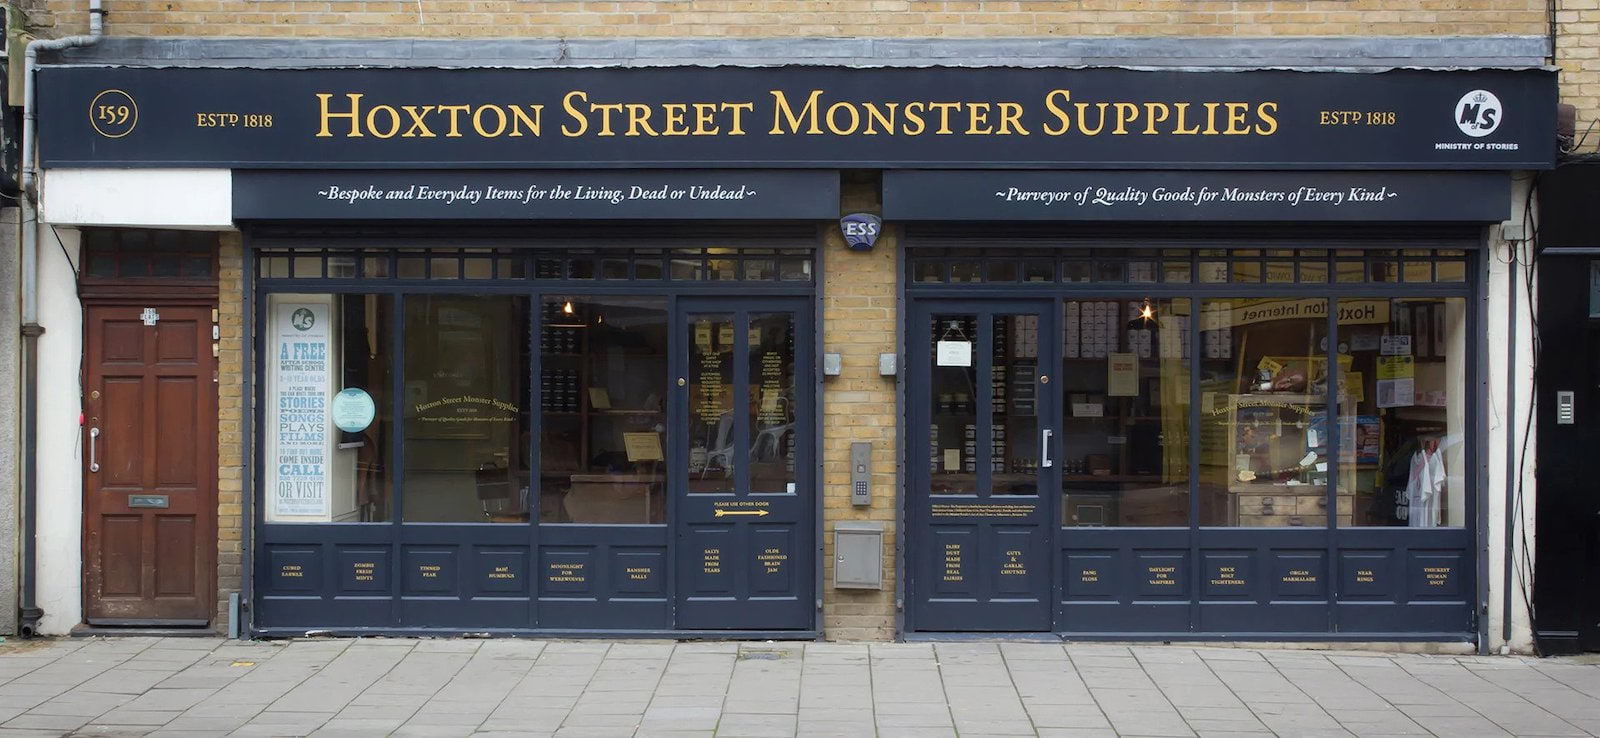 Hoxton Street Monster Supplies – February half-term activities